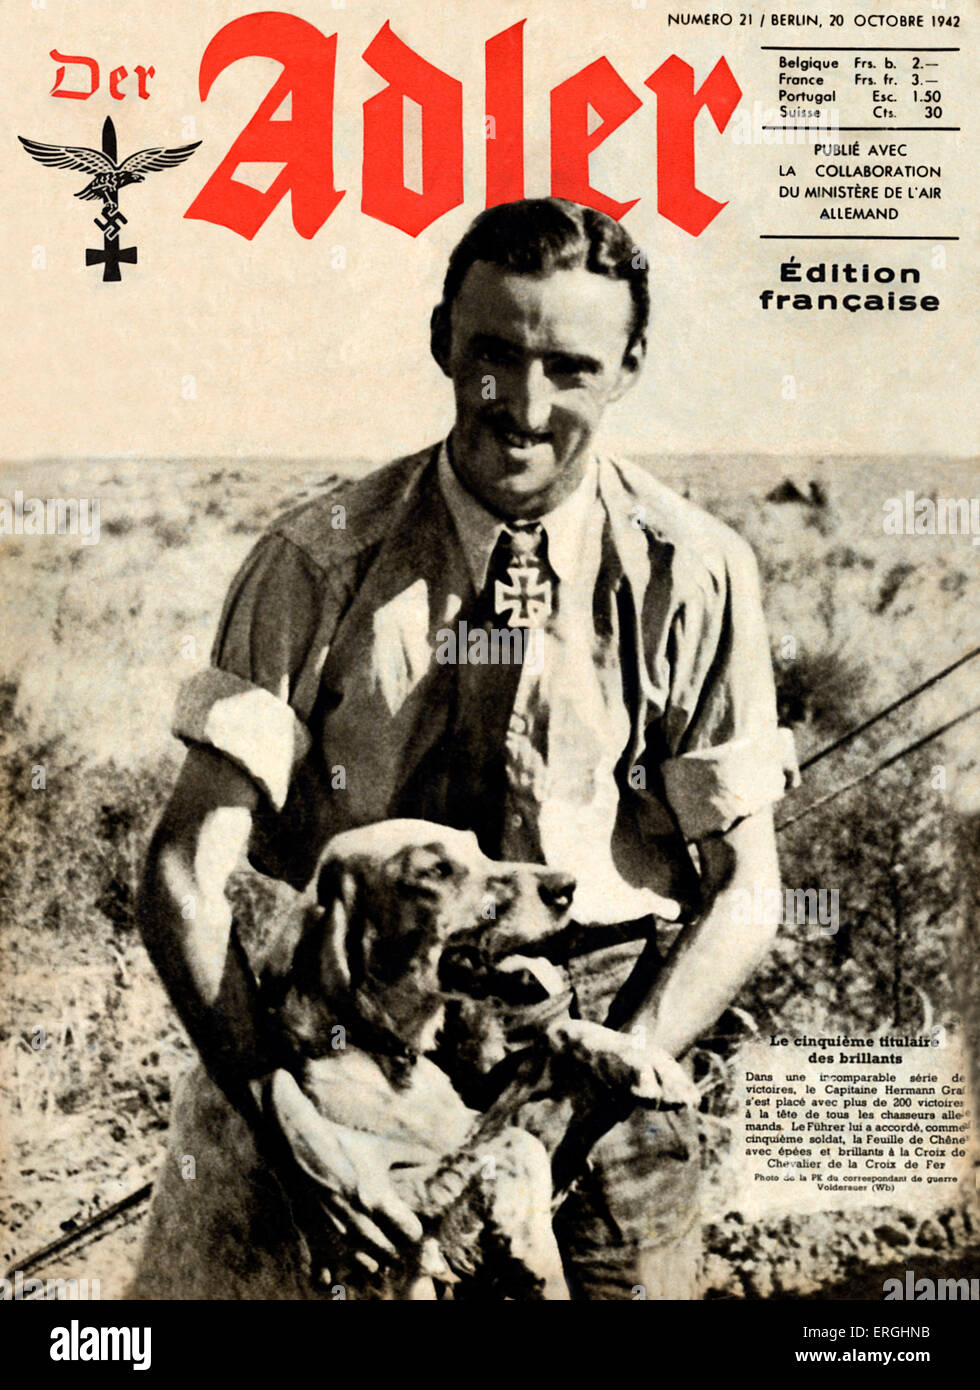 Der Adler, magazine de l'air allemande (Luftwaffe) pendant la Seconde Guerre mondiale. Couvrir du 20 octobre 1942. Édition française. Montrant Banque D'Images